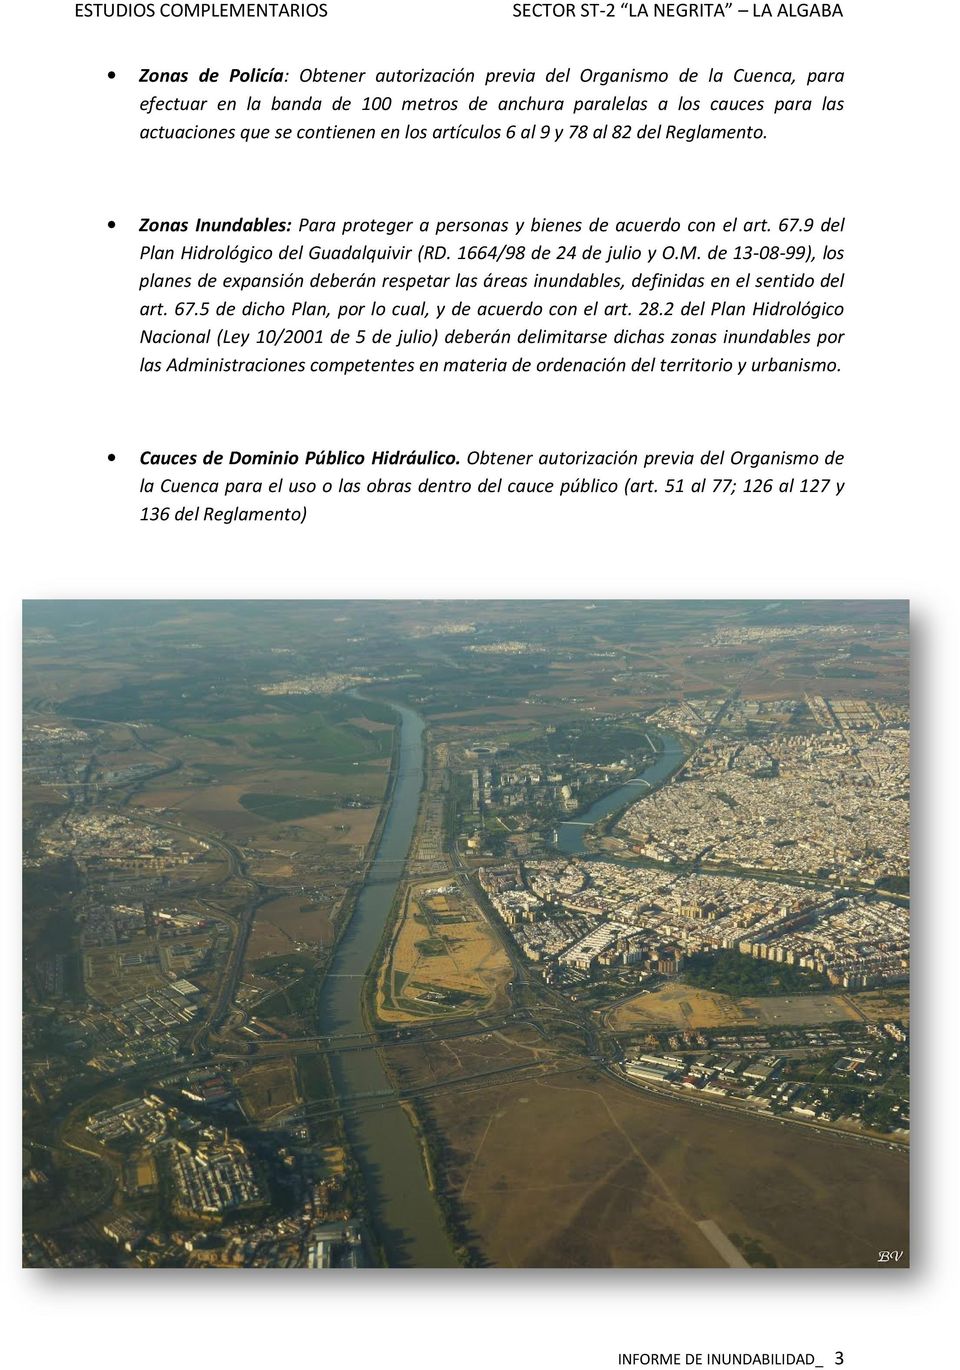 9 del Plan Hidrológico del Guadalquivir (RD. 1664/98 de 24 de julio y O.M. de 13-08-99), 13 los planes de expansión deberán respetar las áreas inundables, definidas en el sentido del art. 67.